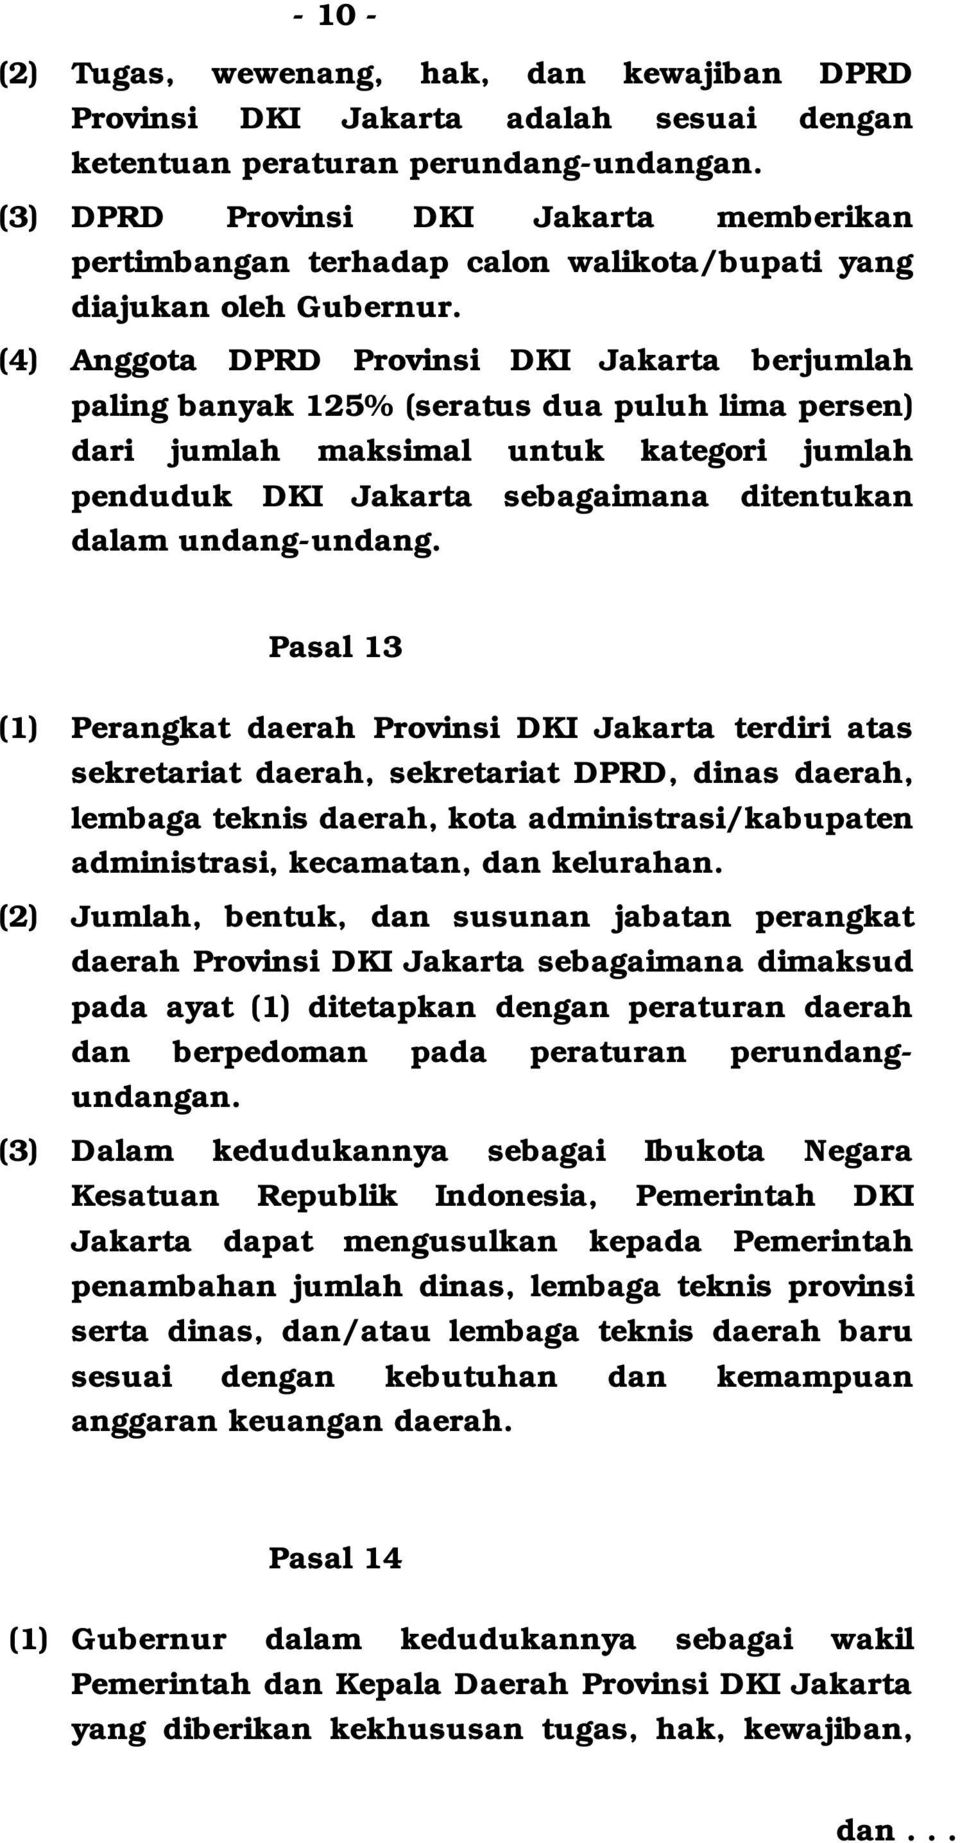 (4) Anggota DPRD Provinsi DKI Jakarta berjumlah paling banyak 125% (seratus dua puluh lima persen) dari jumlah maksimal untuk kategori jumlah penduduk DKI Jakarta sebagaimana ditentukan dalam